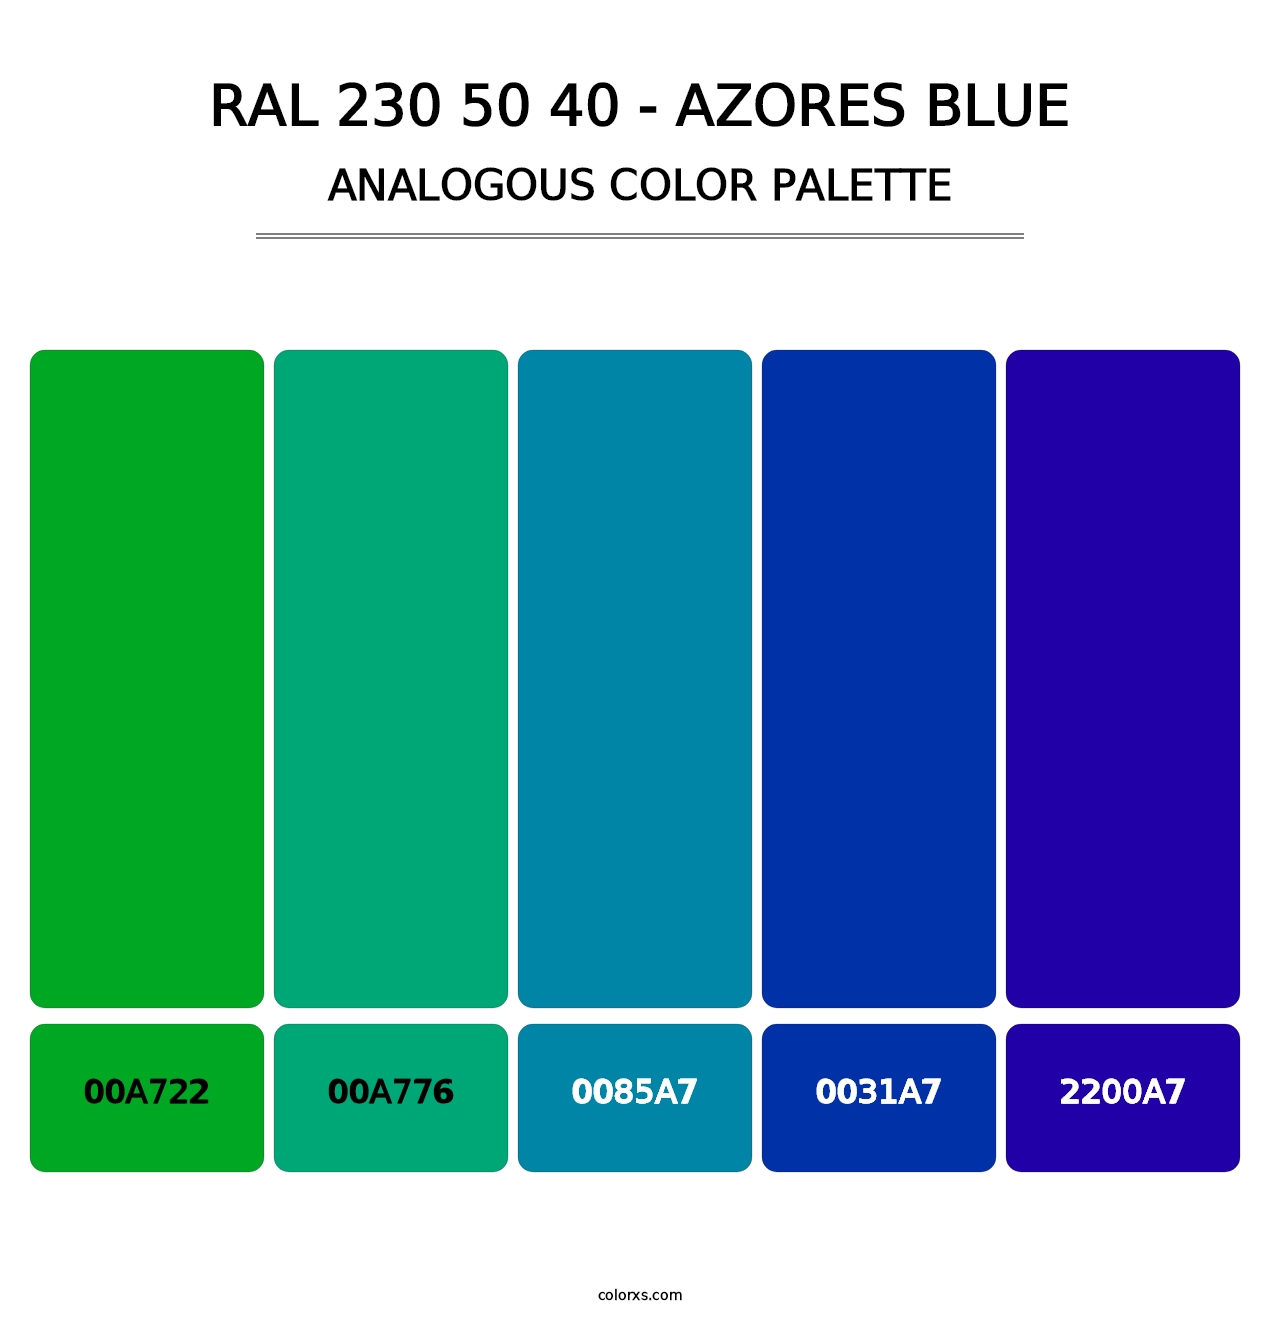 RAL 230 50 40 - Azores Blue - Analogous Color Palette